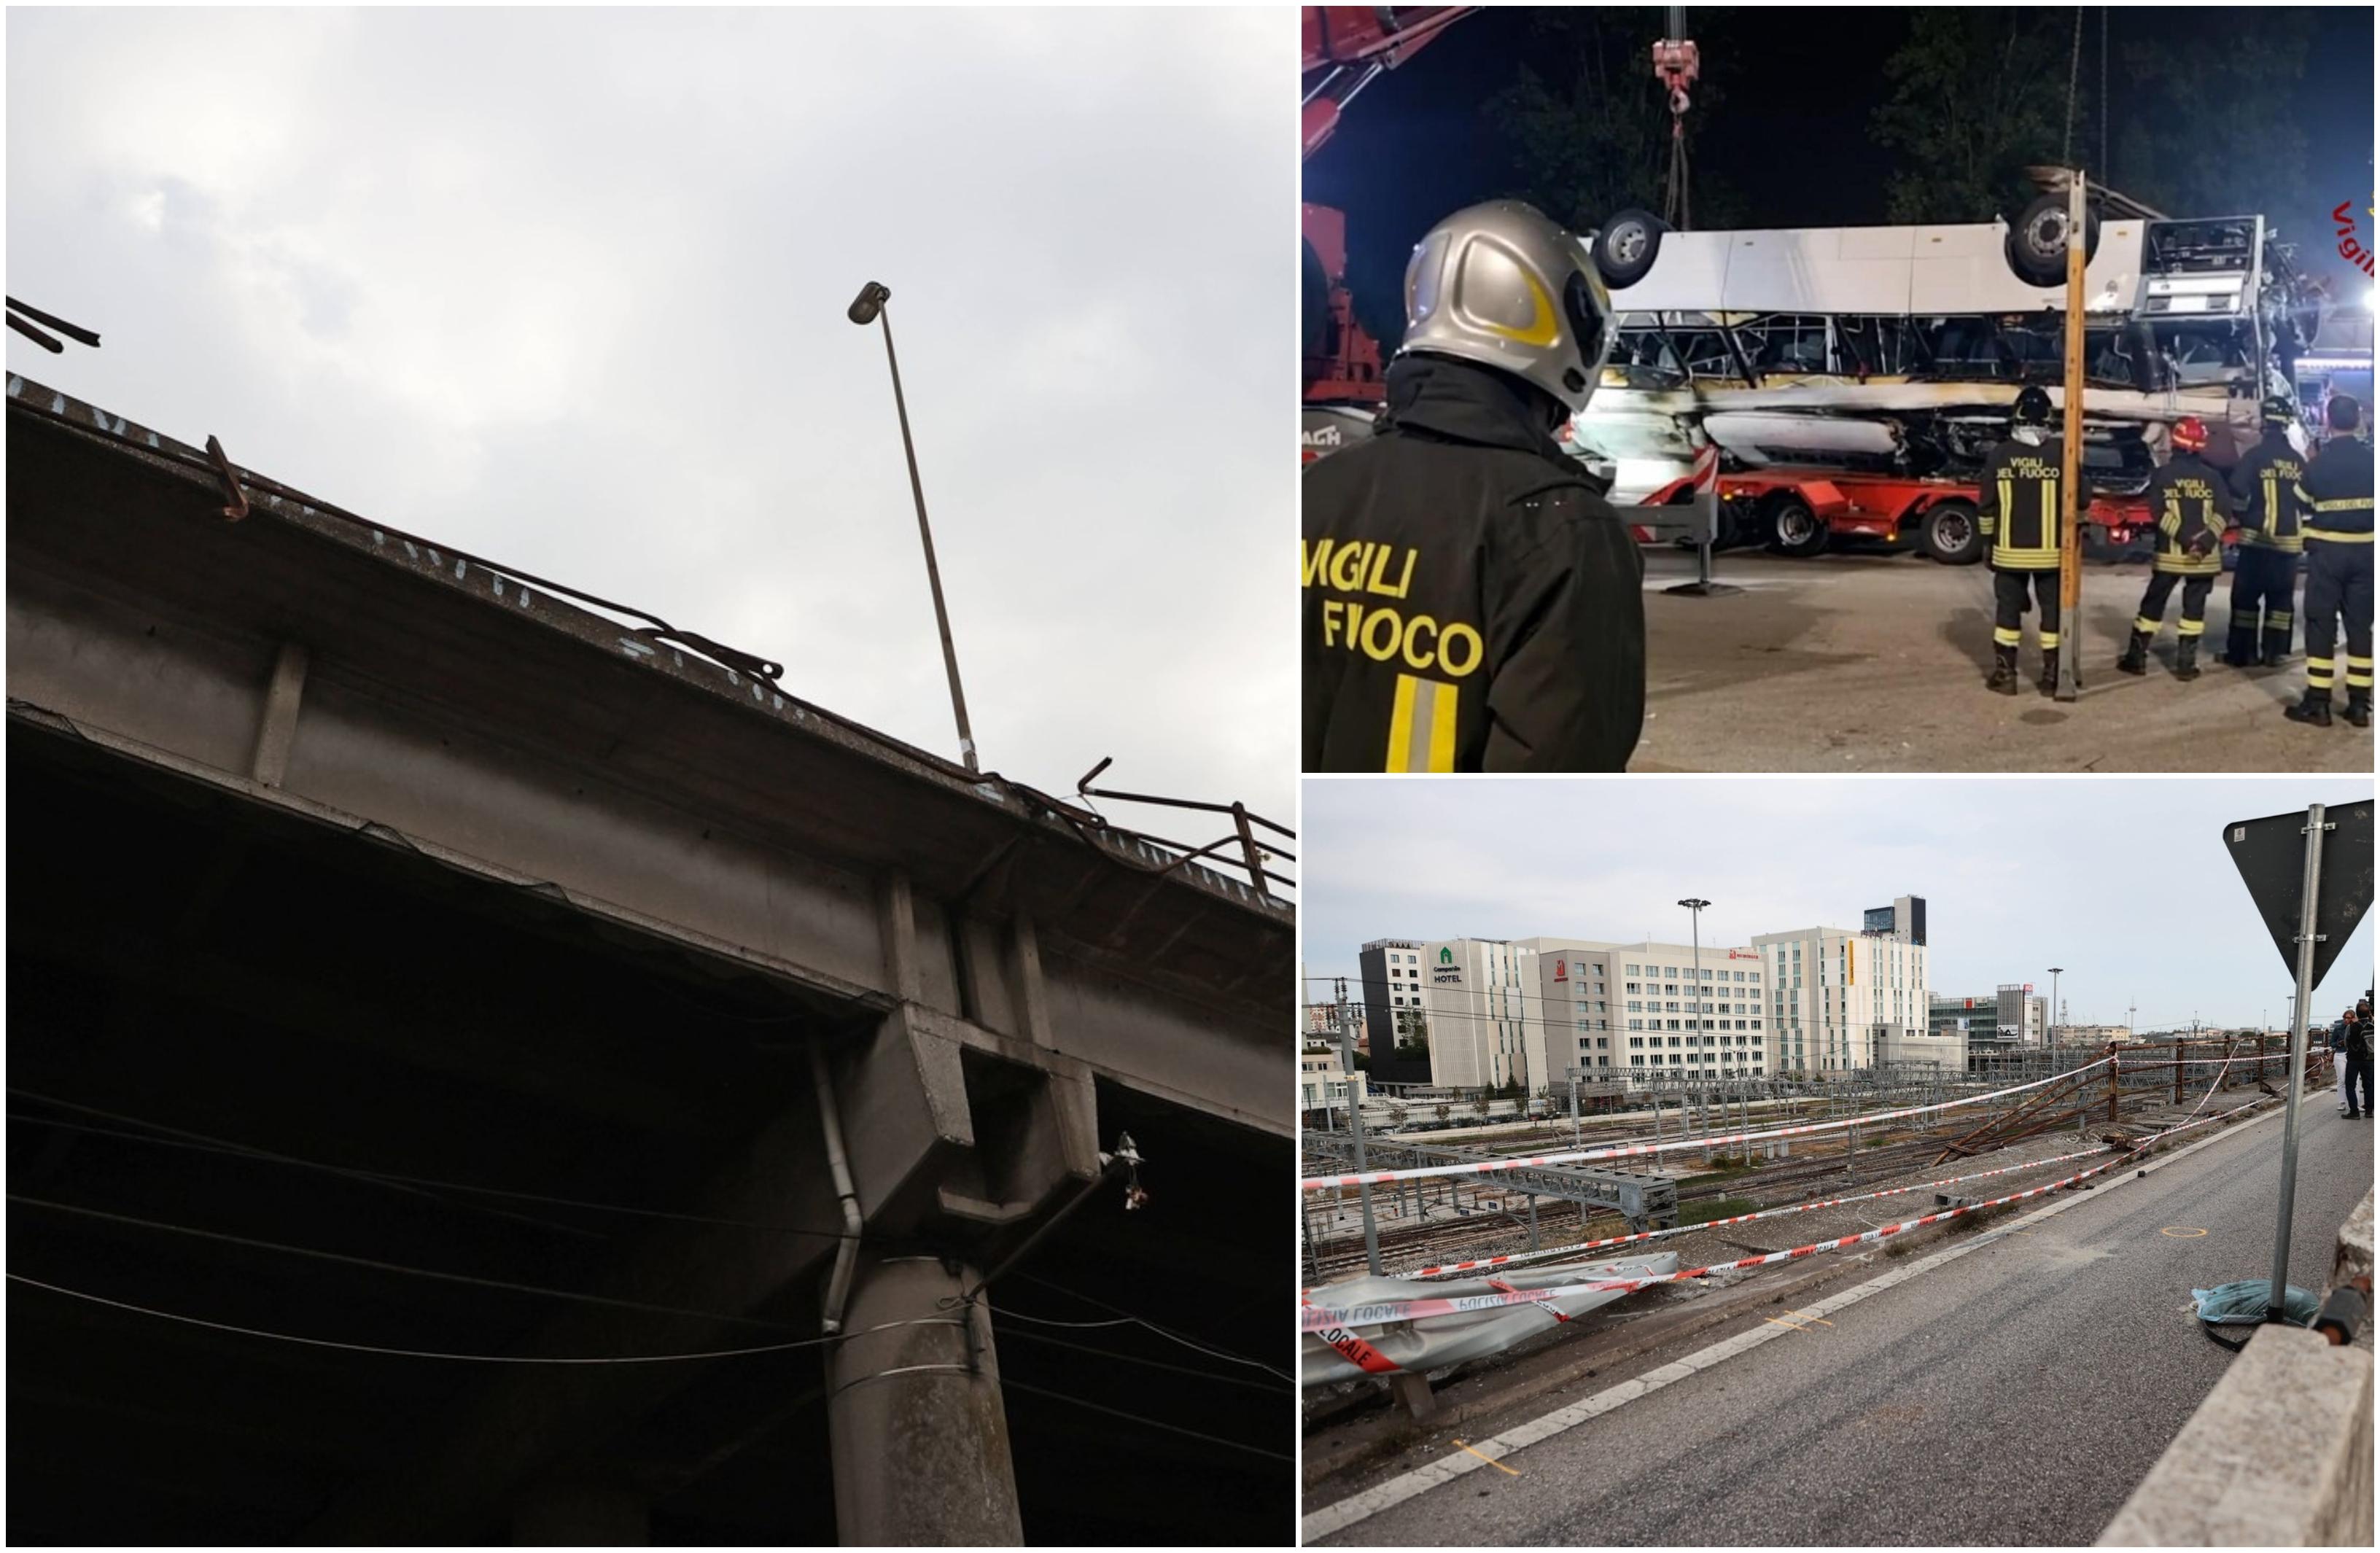 "Din cauza celor 2 metri a căzut autobuzul". Tragedia de la Mestre ar fi putut fi evitată. Podul era vechi de 50 de ani şi trebuia reparat în 2016